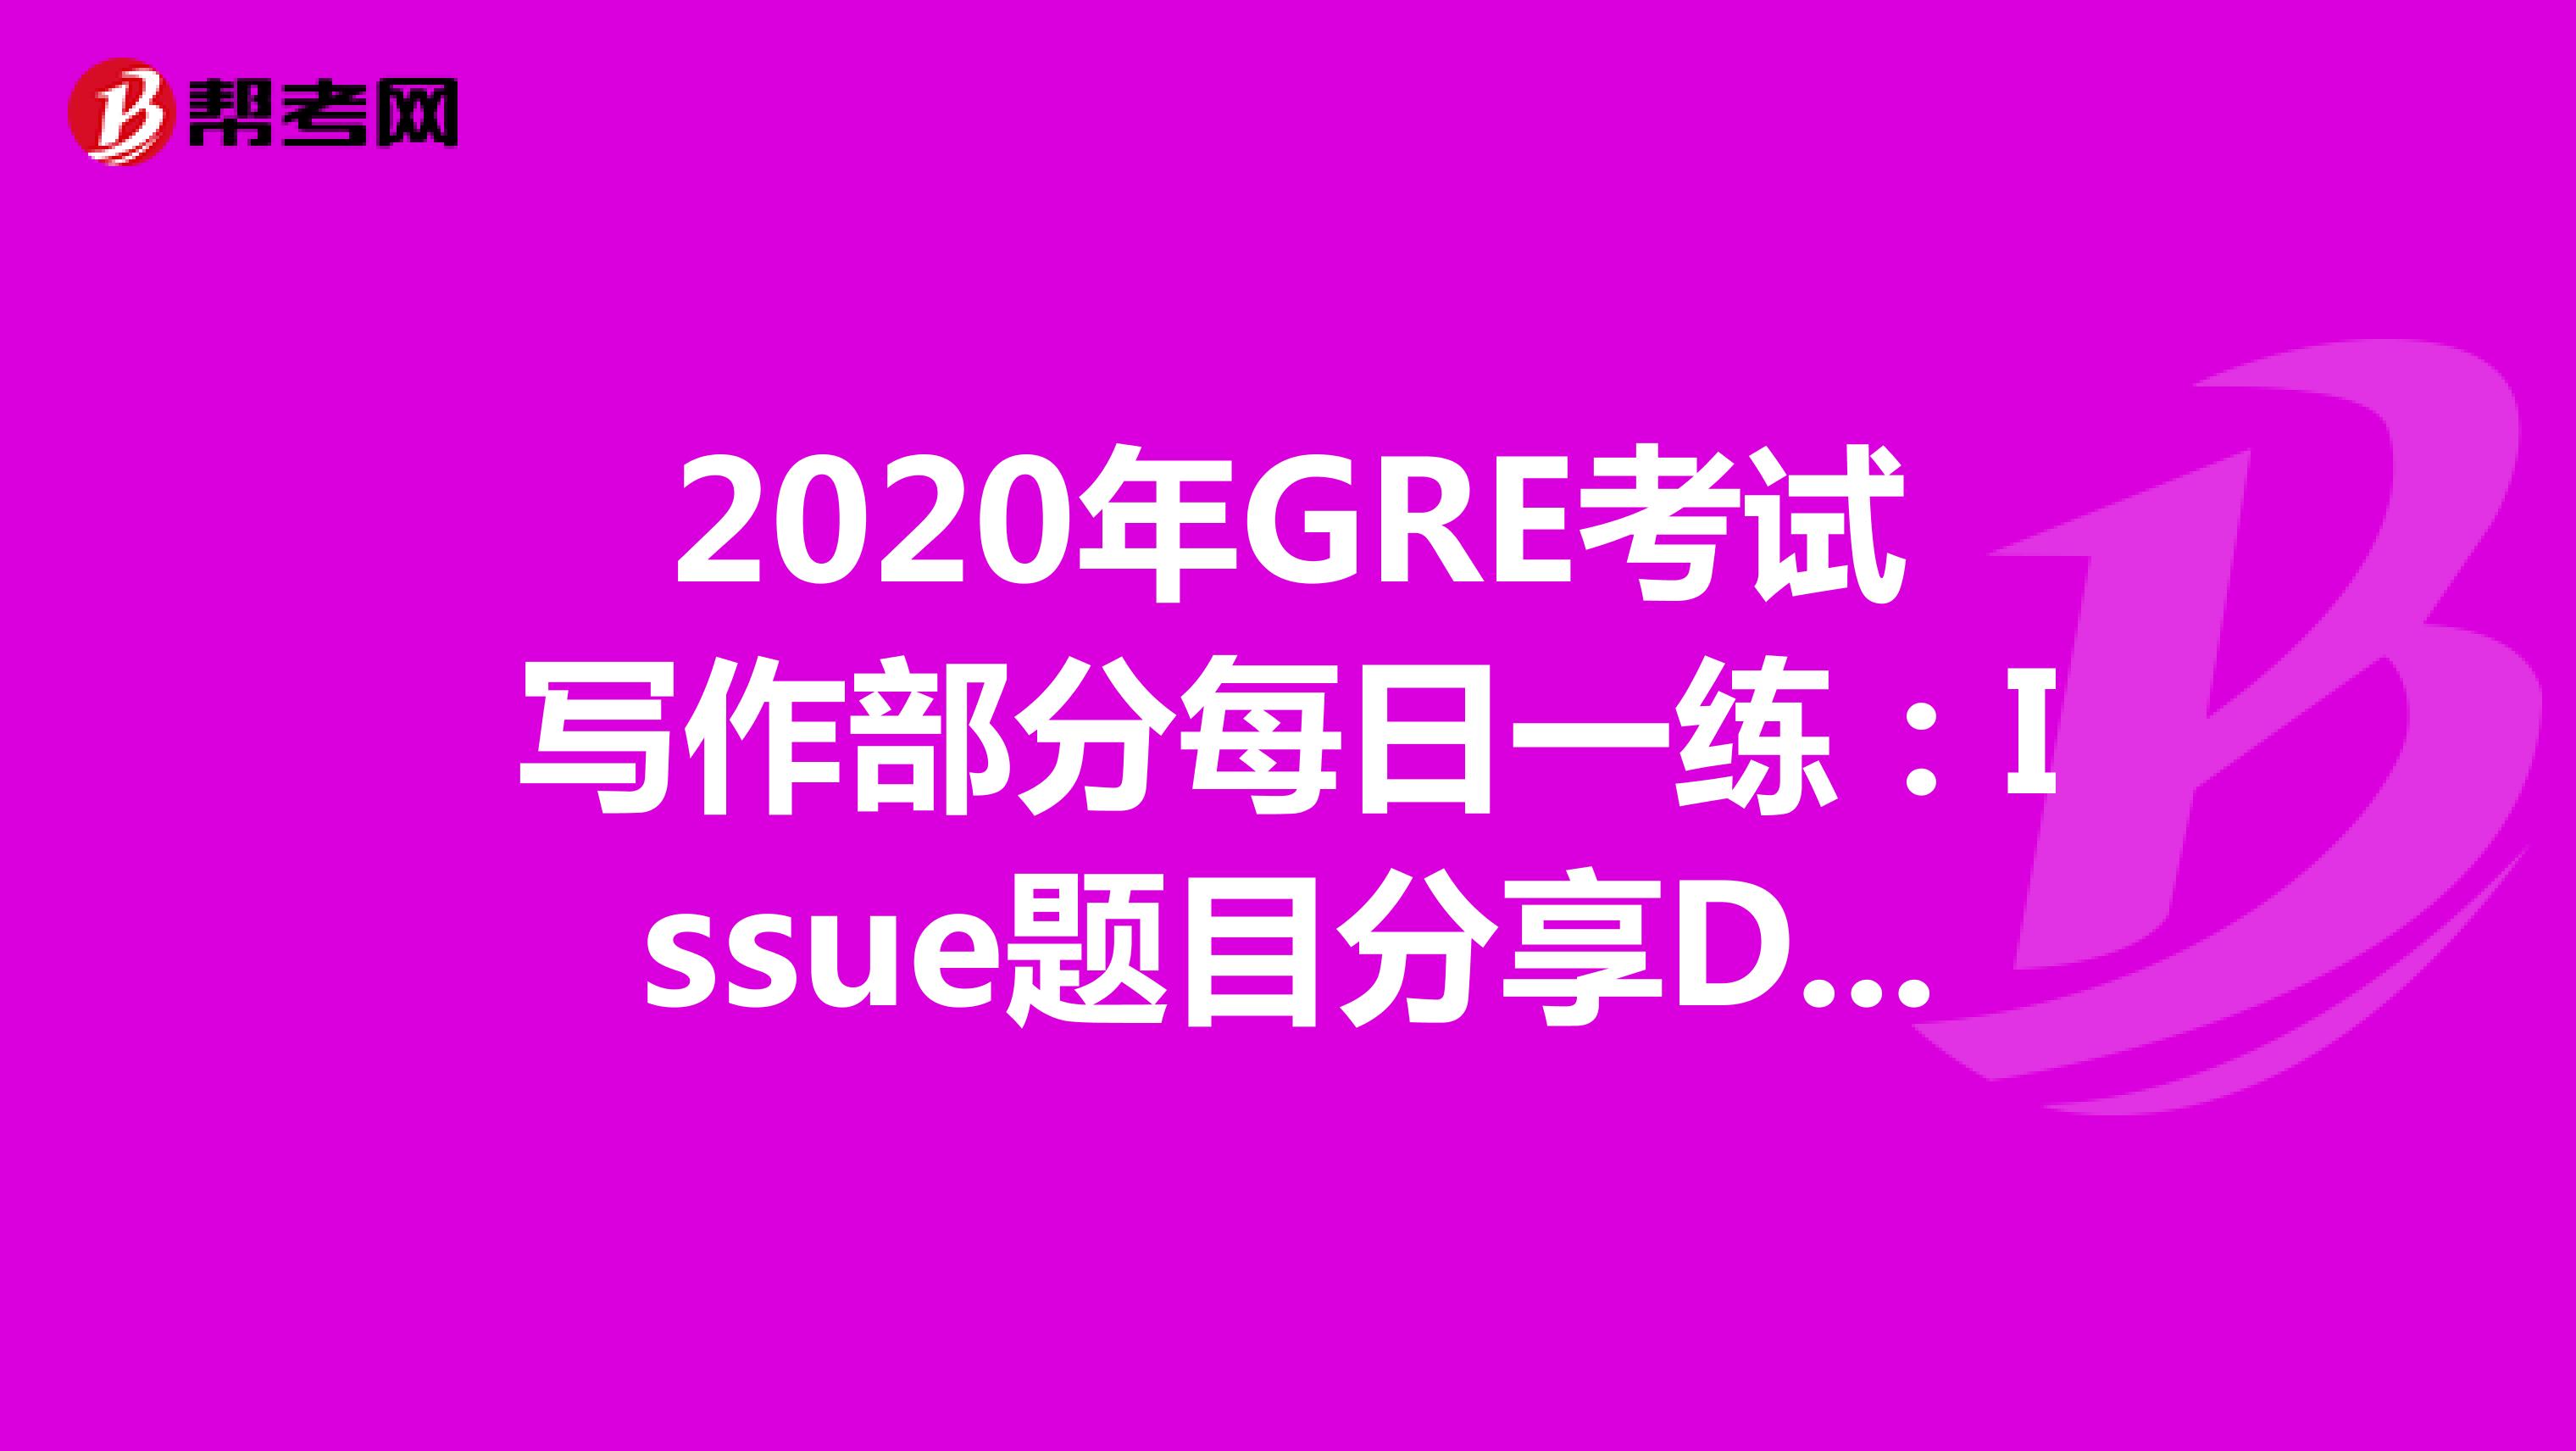 2020年GRE考试写作部分每日一练：Issue题目分享DAY58